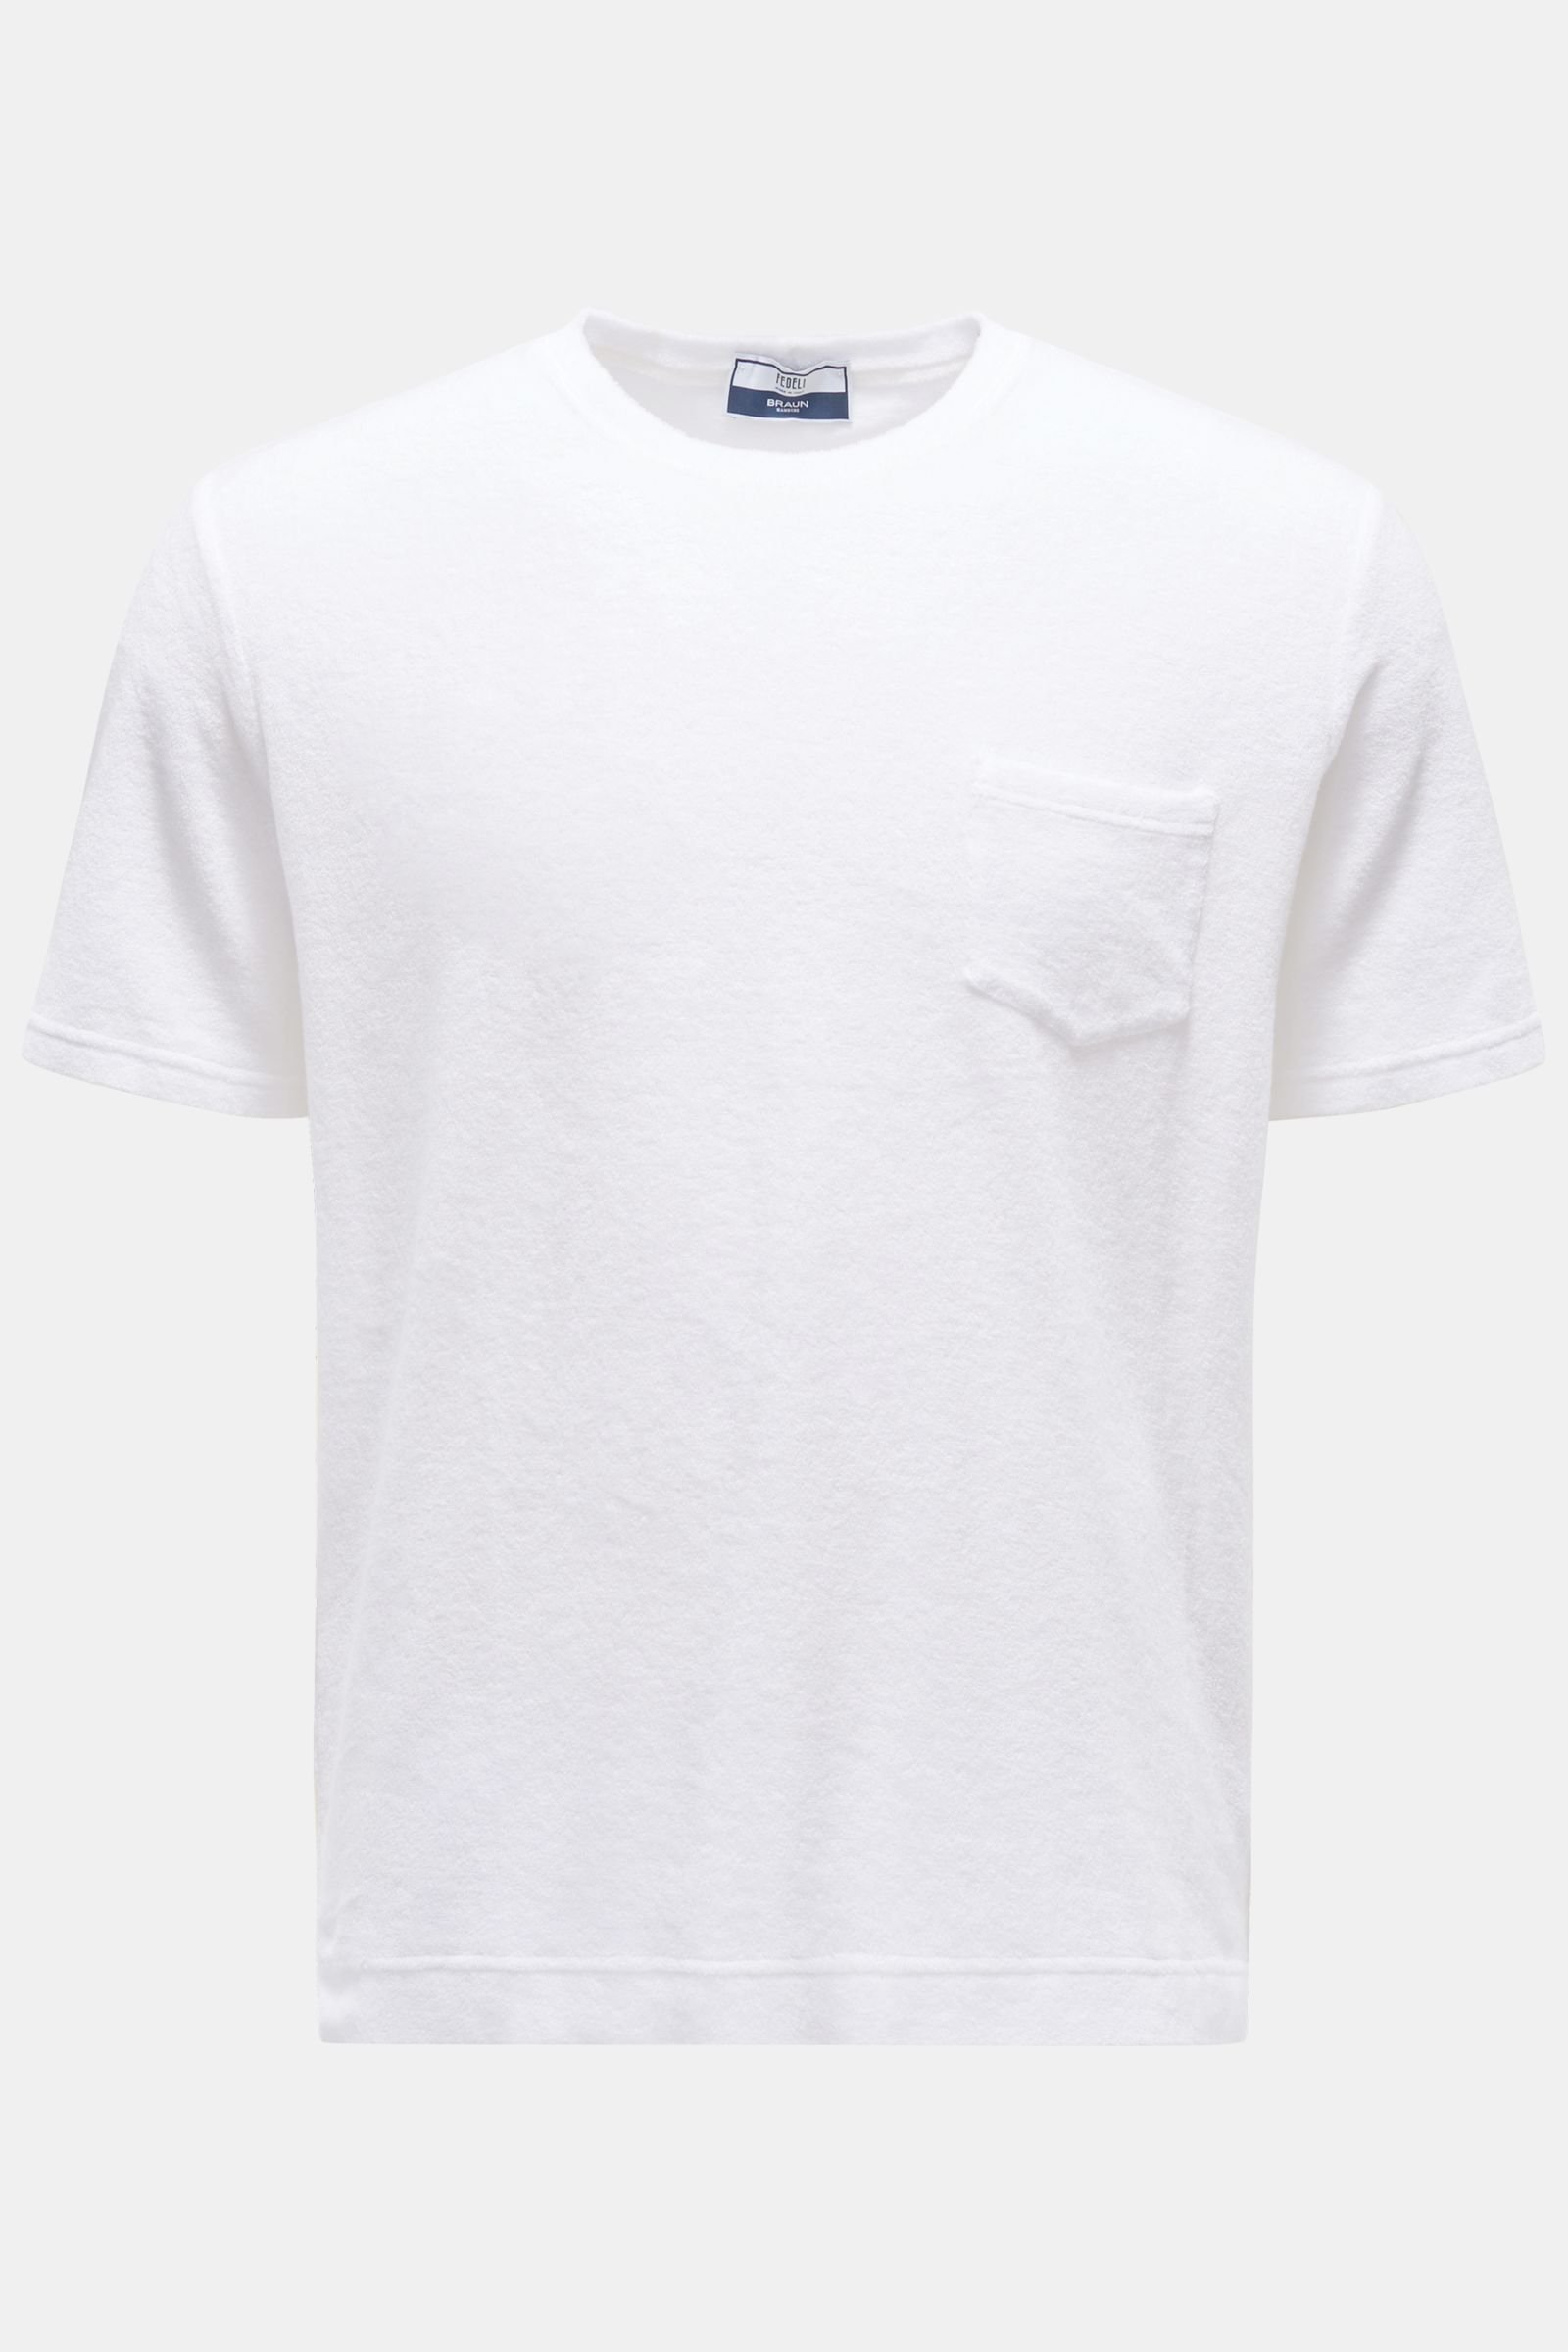 Terry crew neck T-shirt 'Extreme' white